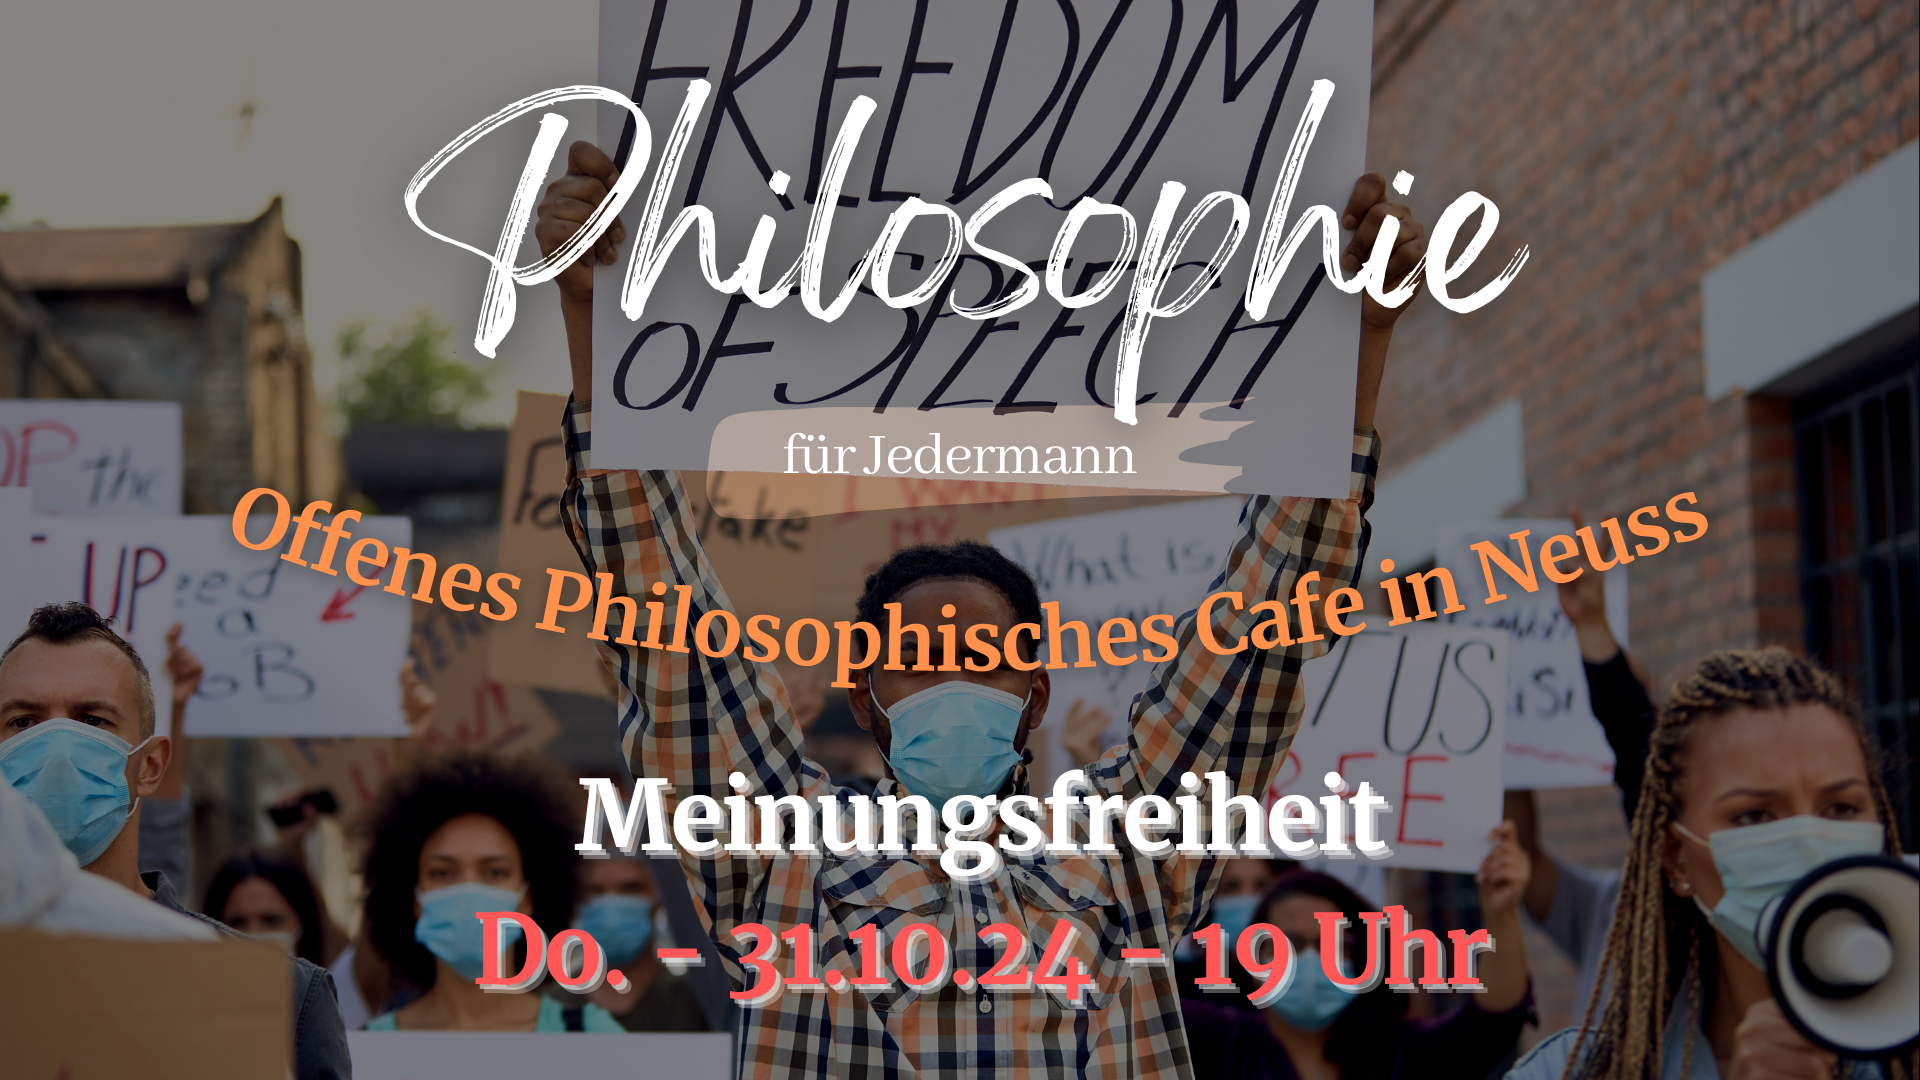 Philosophie Café Düsseldorf Meinungsfreiheit